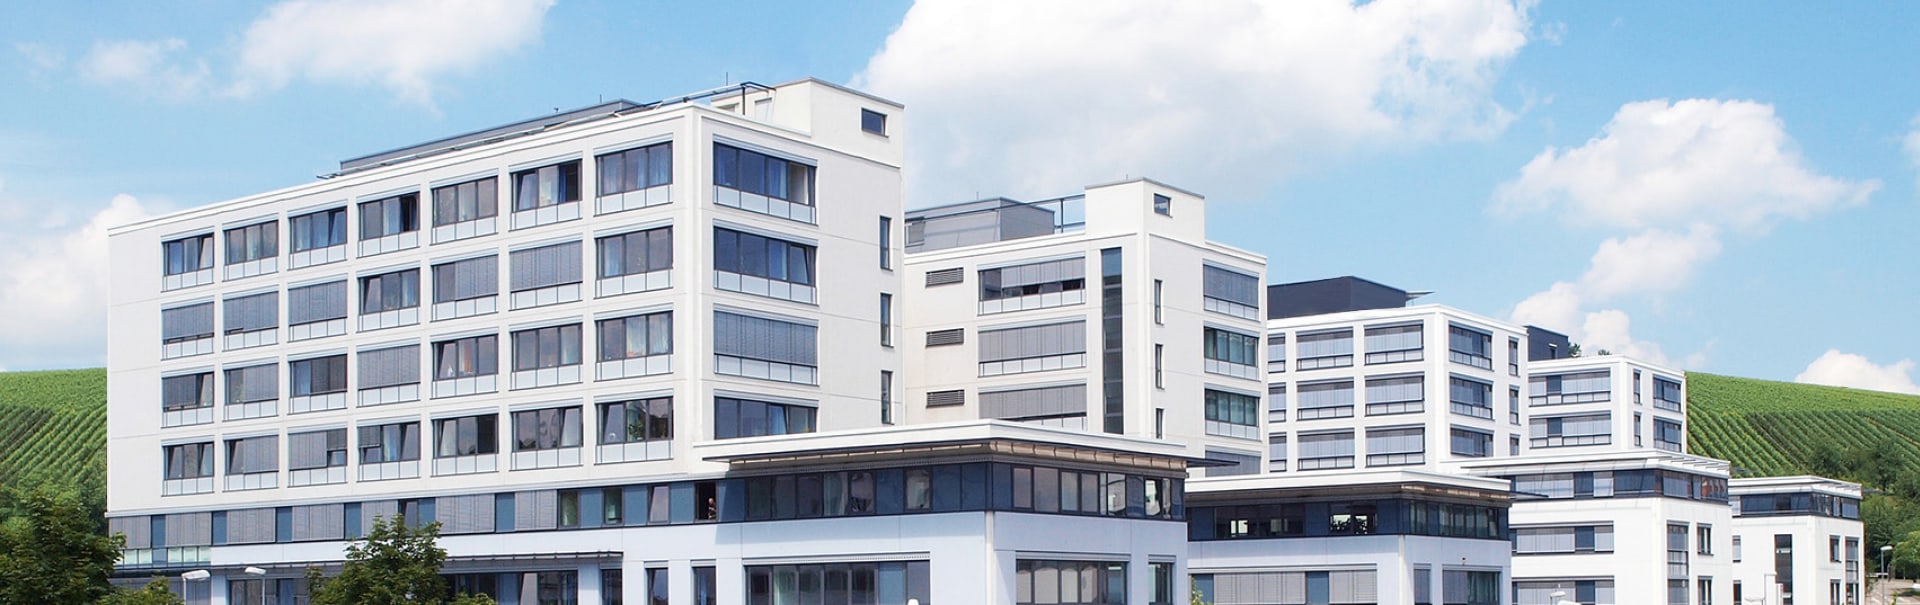 DIBAG AG, München – Vermietung Büro, Gewerbeflächen und Wohnungen